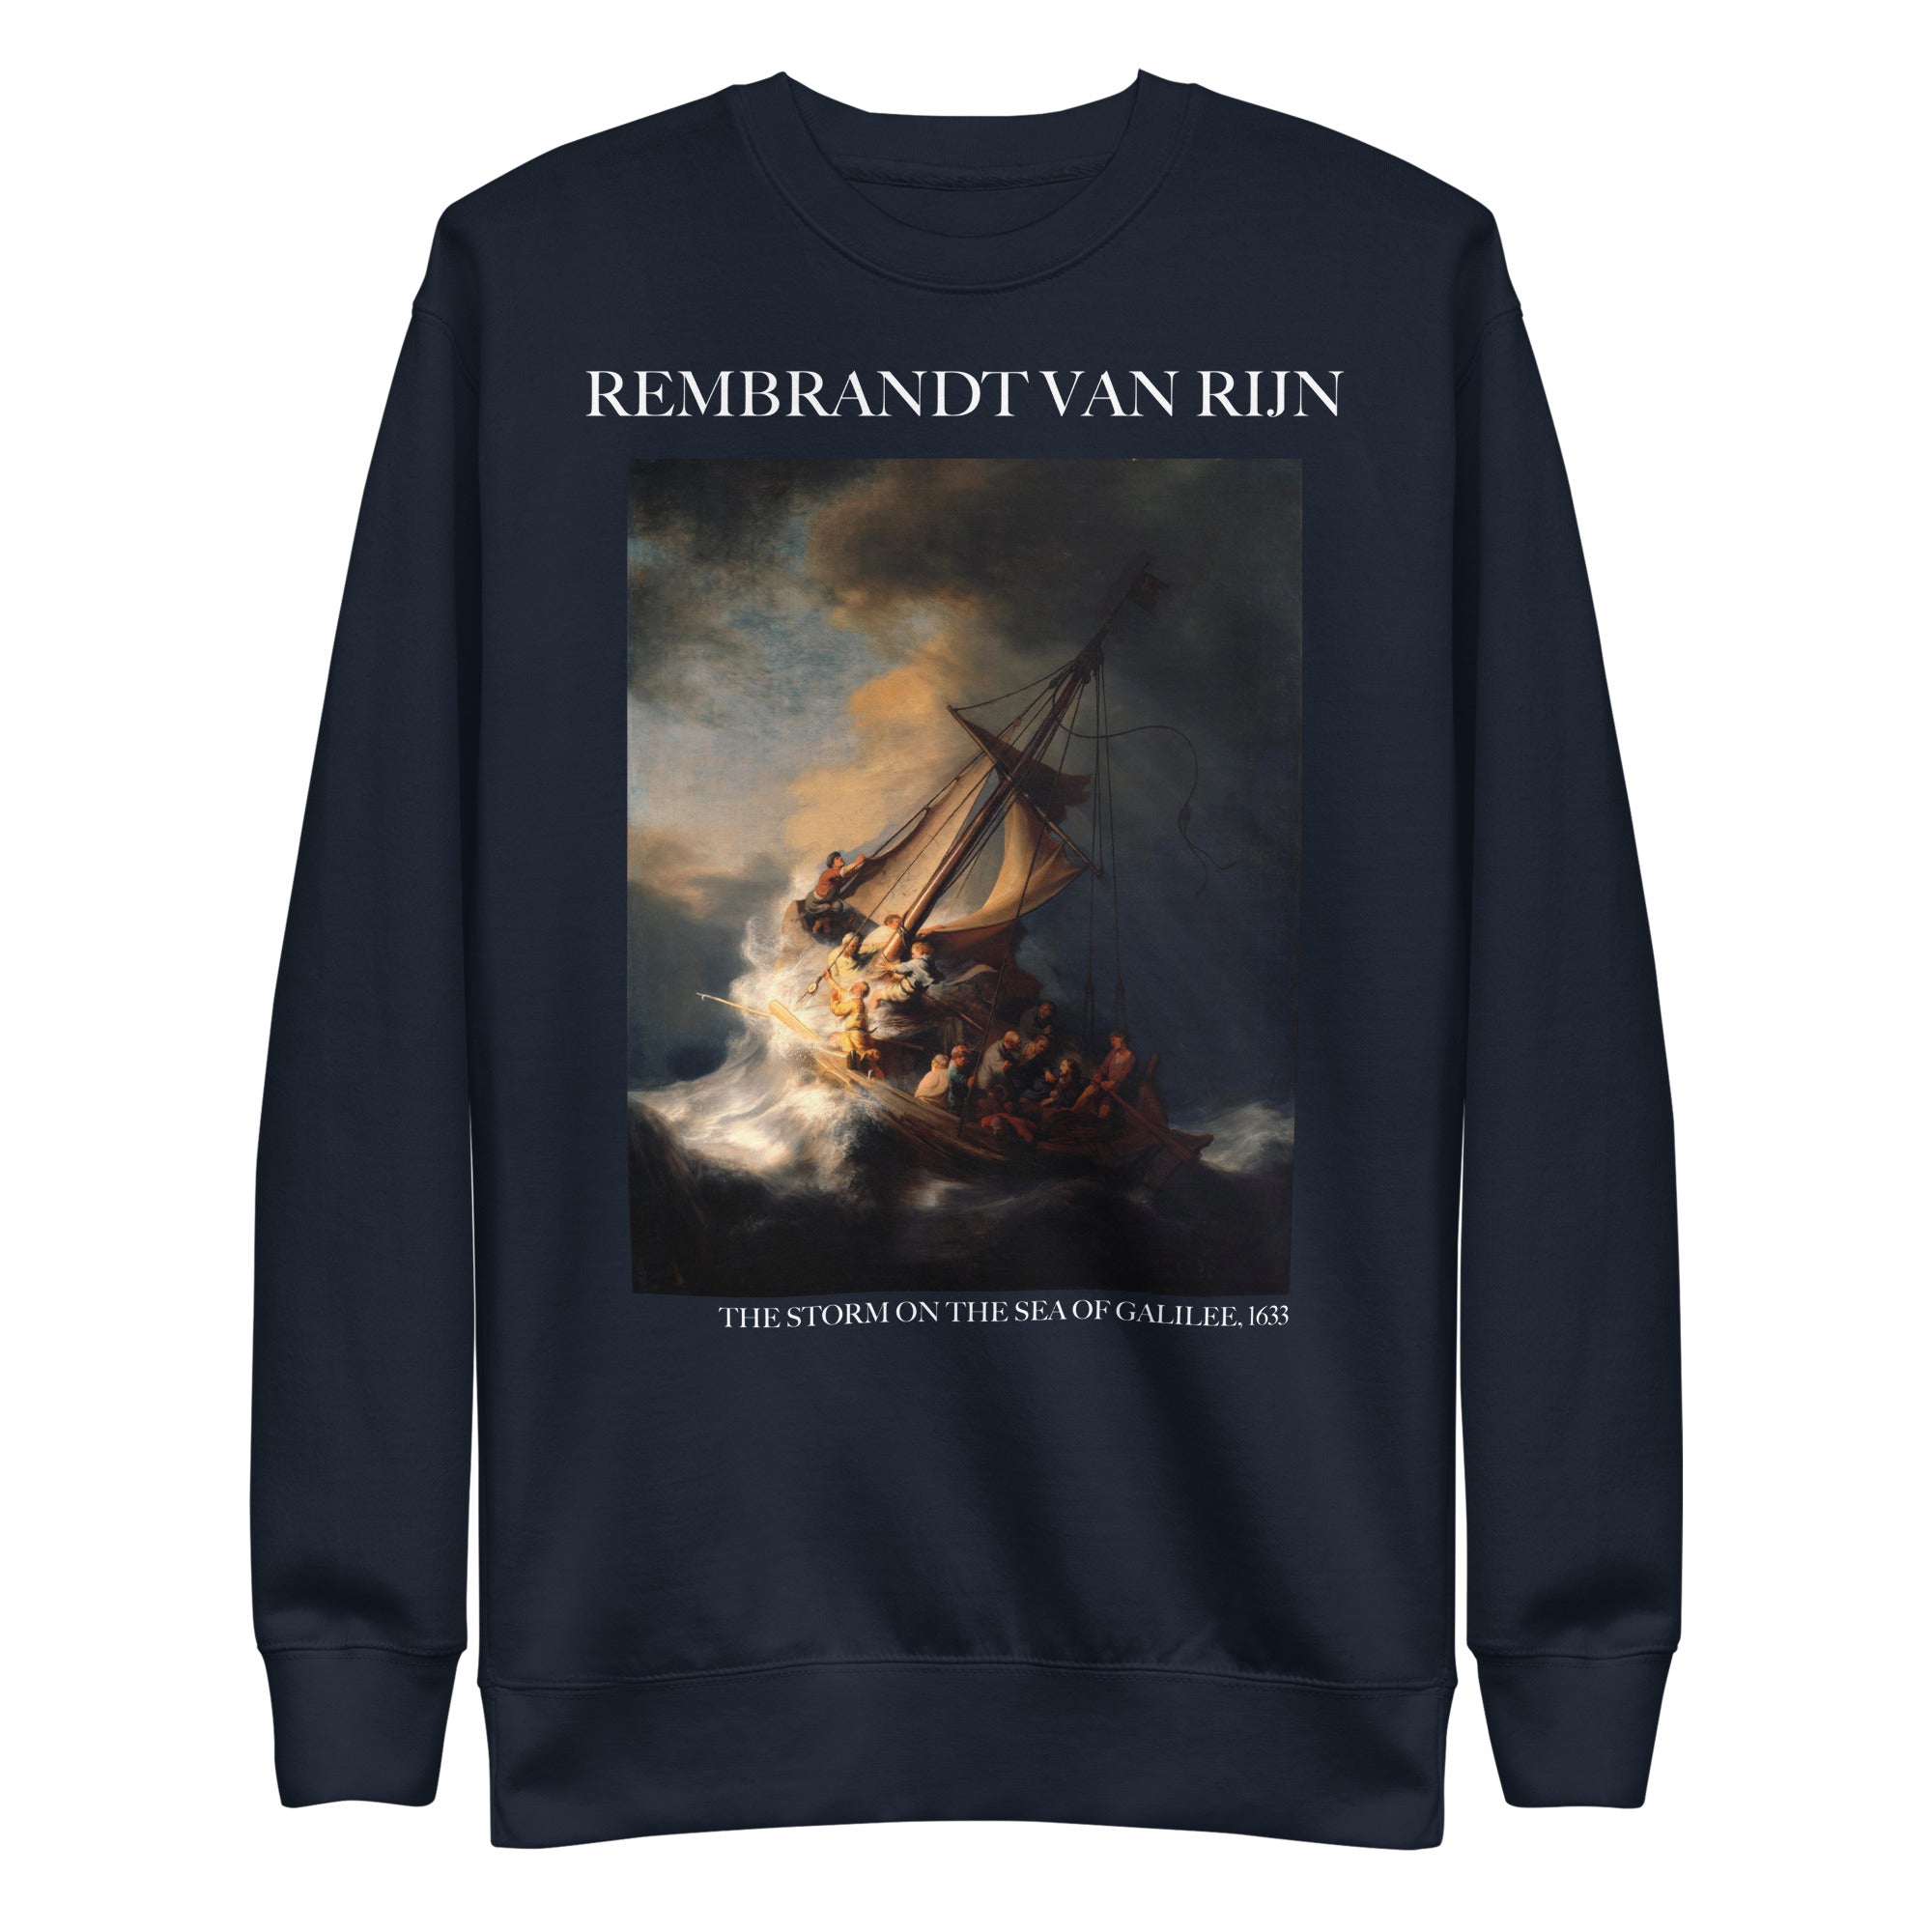 Rembrandt van Rijn 'The Storm on the Sea of Galilee' Famous Painting Sweatshirt | Unisex Premium Sweatshirt